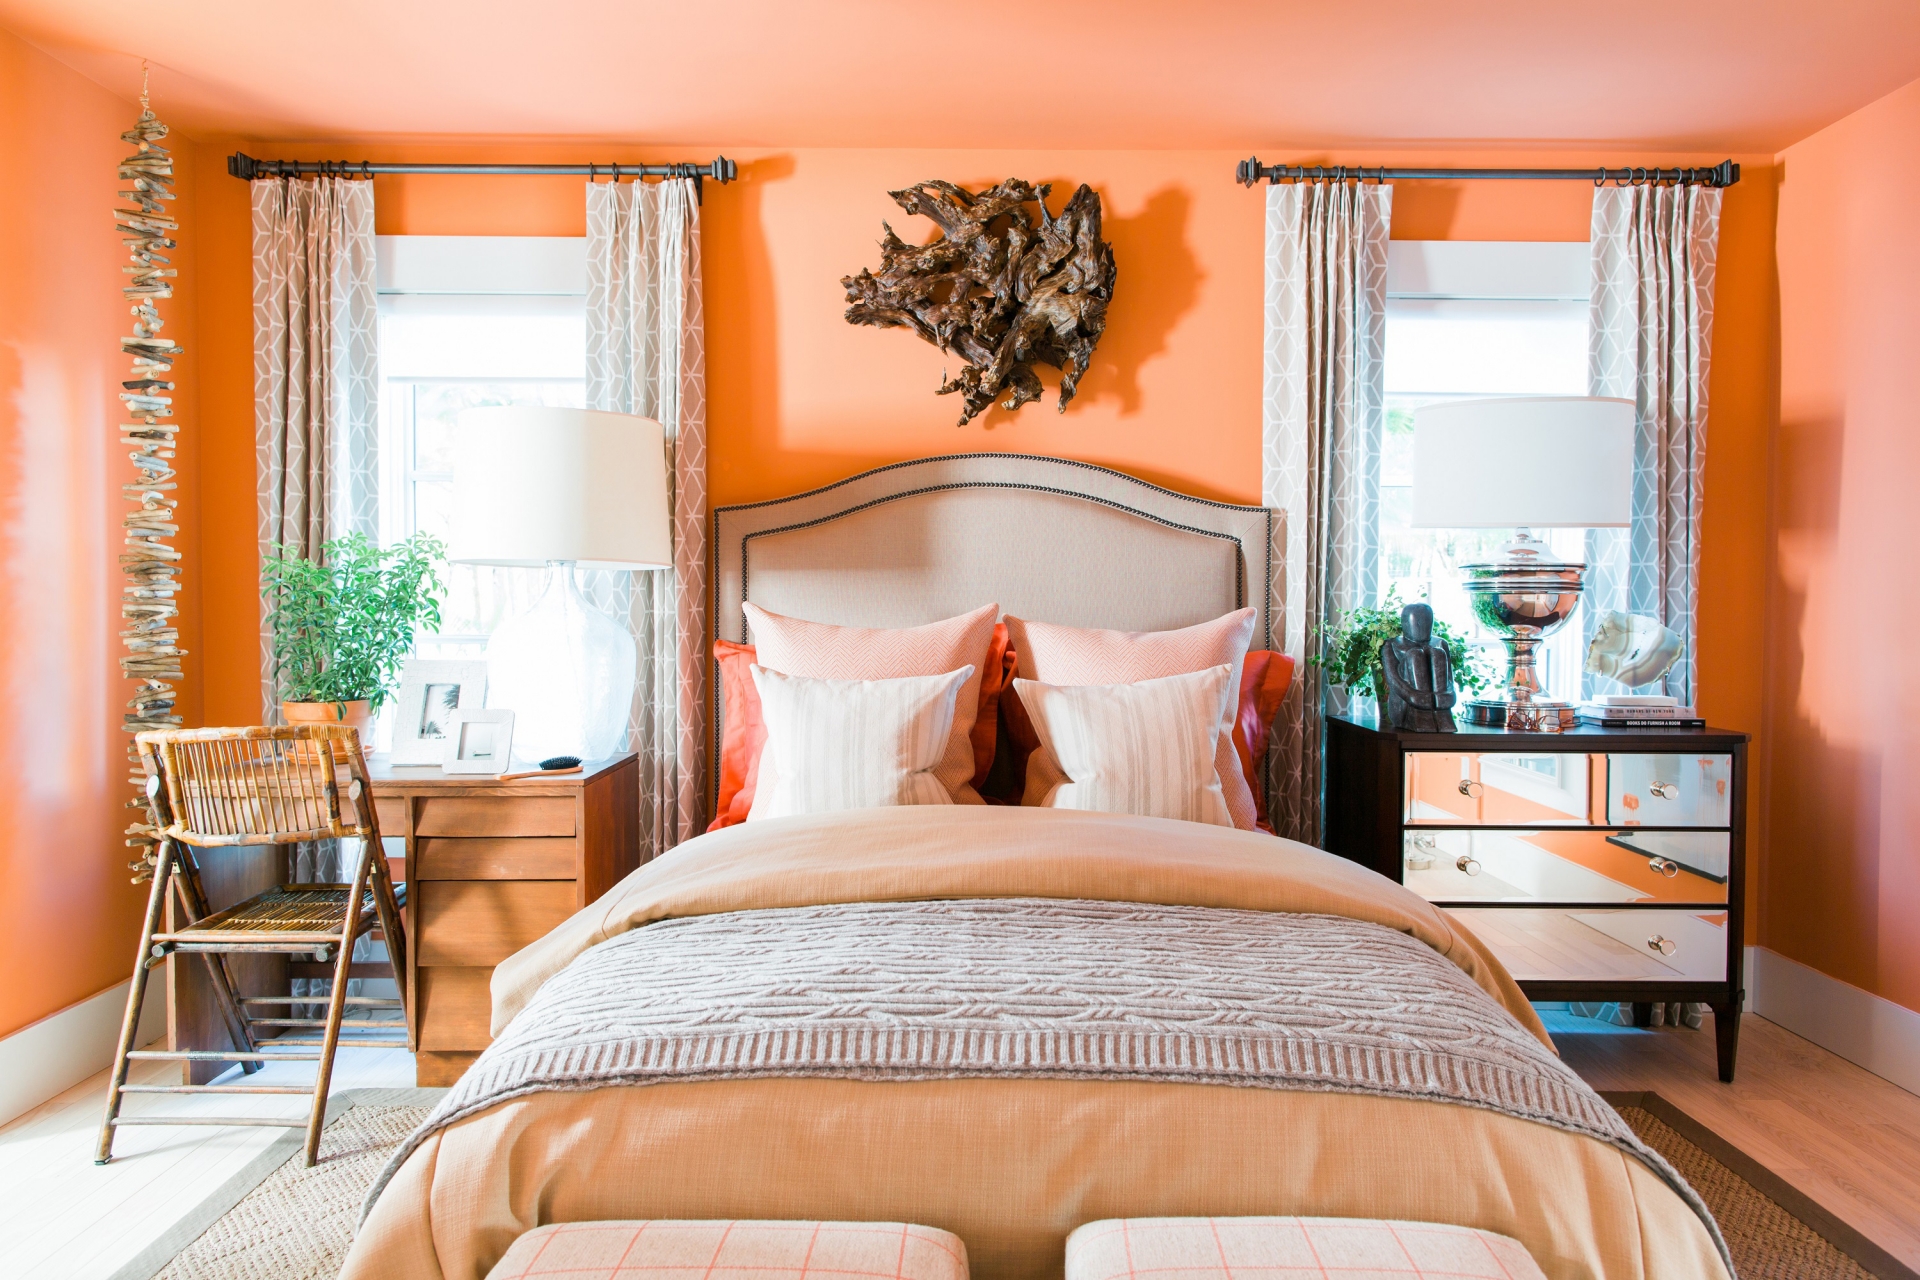 Phòng ngủ cần sự dịu êm nhưng sơn màu cam rực rỡ, chói mắt là sai lầm đáng phải sửa ngay lập tức.